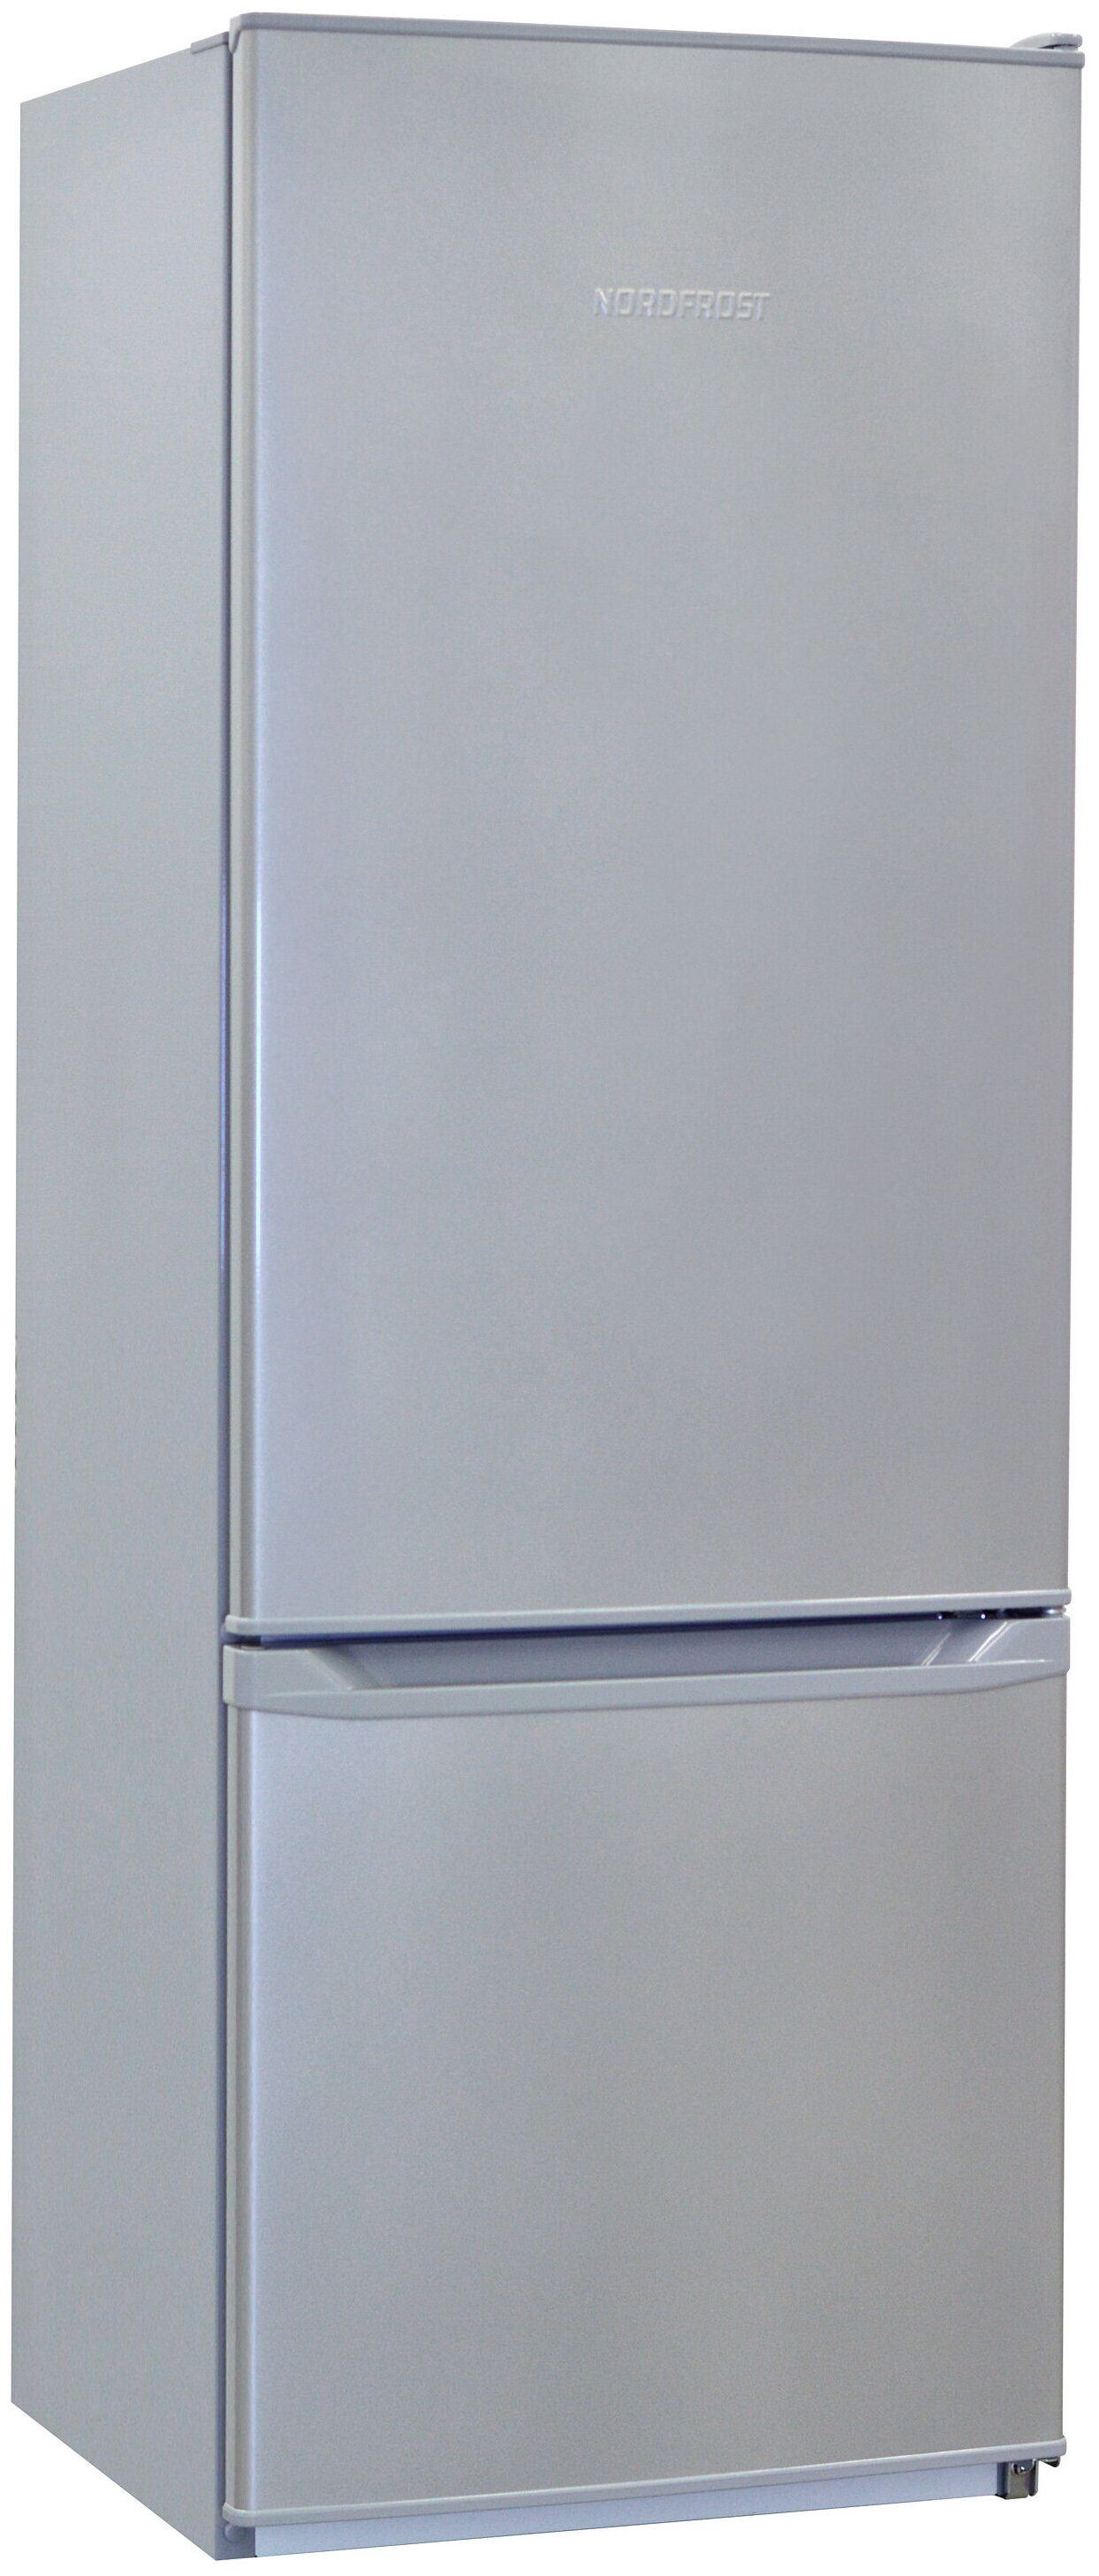 Холодильник NORDFROST NRB 122 332 серебристый металлик2-камерный, 275 л (ХК 205 л + МК 70 л), класс 